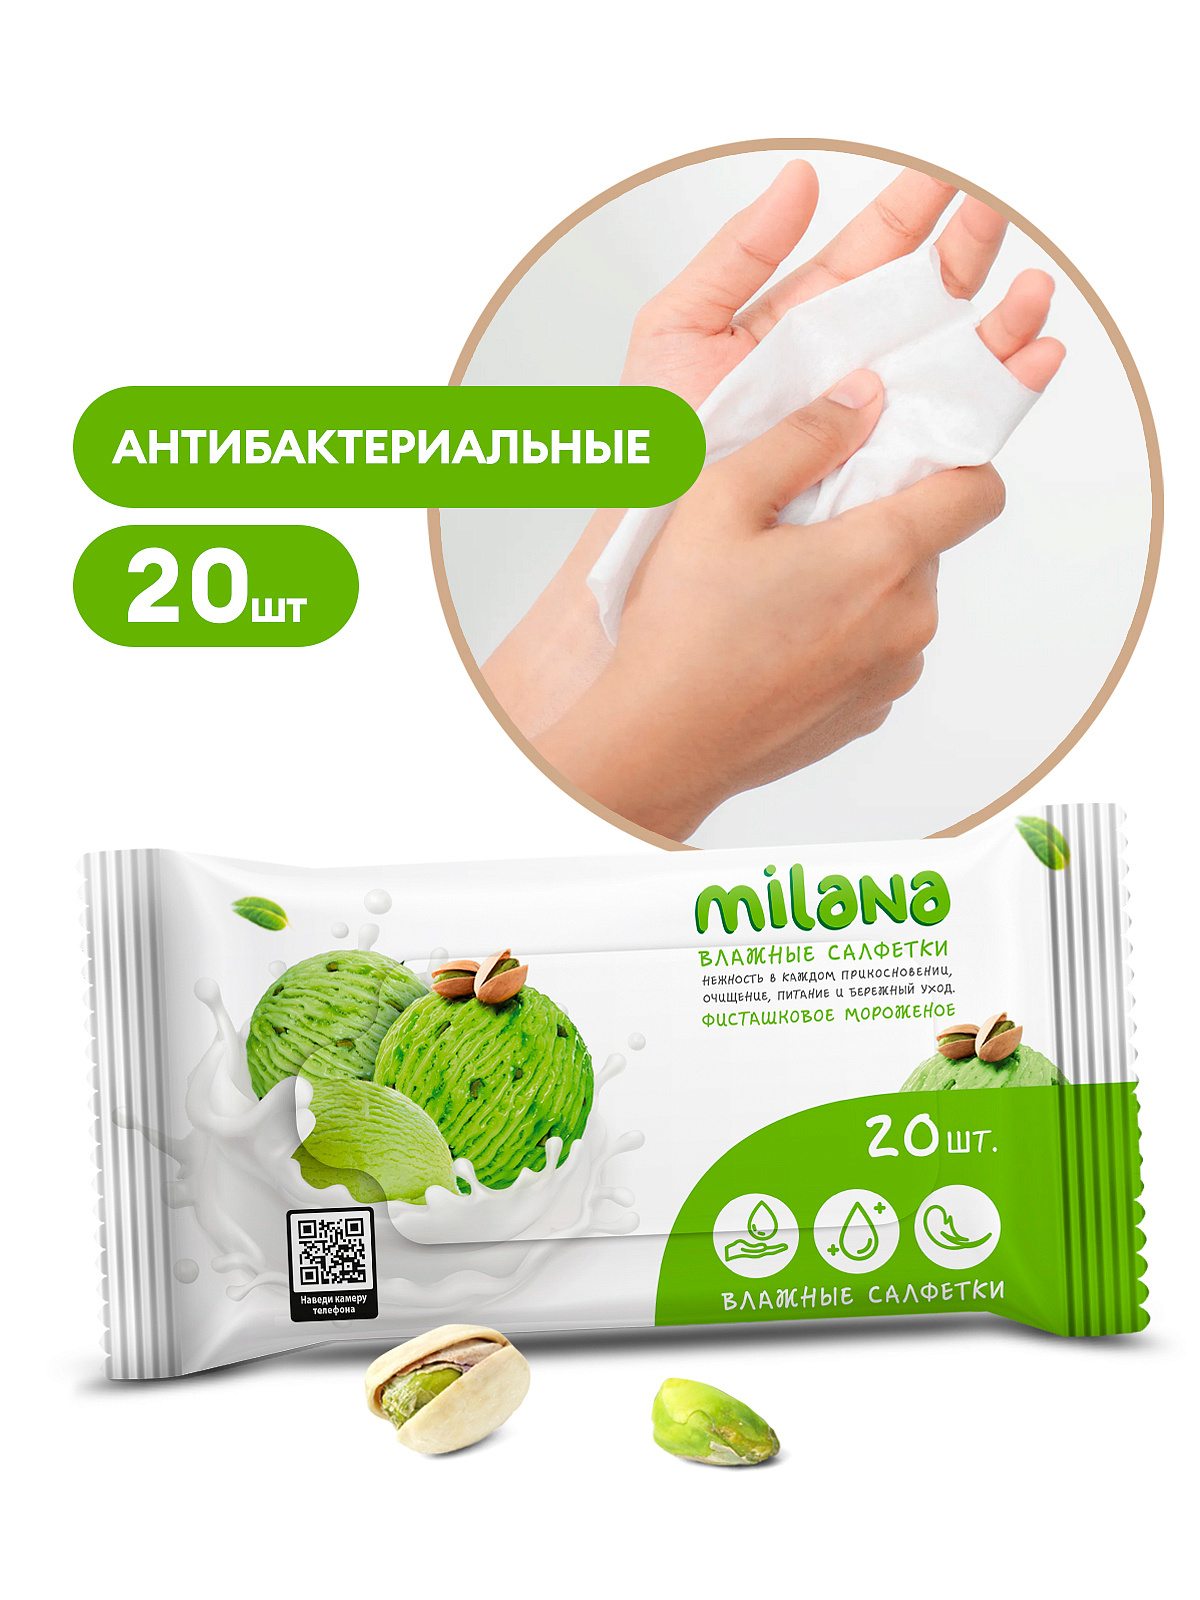 Салфетки влажные антибактериальные Milana Фисташковое мороженое (20 шт.)